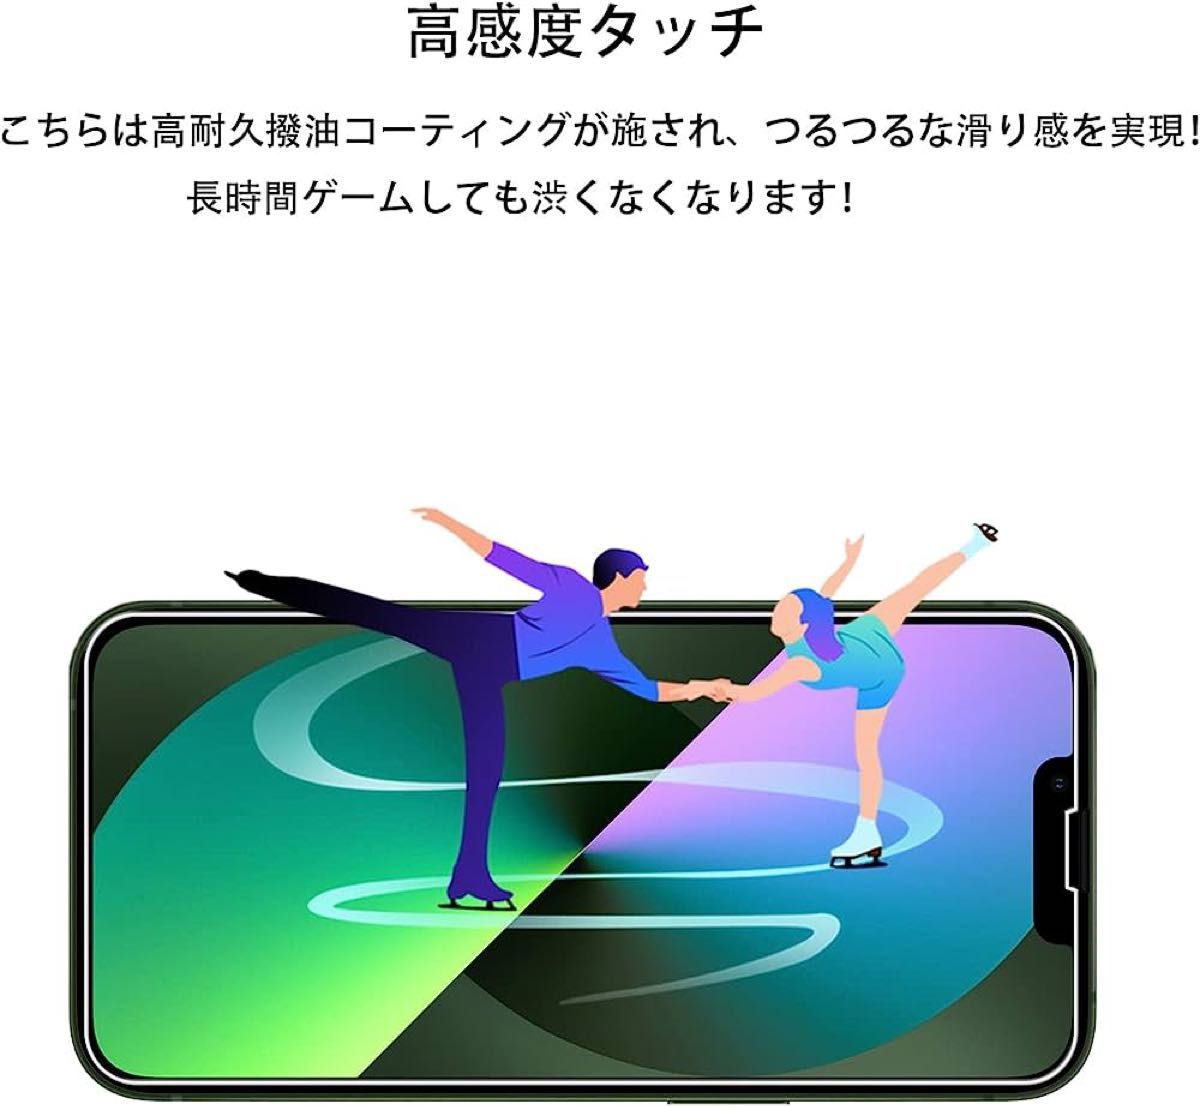 ★即購入OK★2枚セット ガイド枠付き KPNS 日本素材製 強化ガラス iPhone14/13 / iPhone 13 Pro用